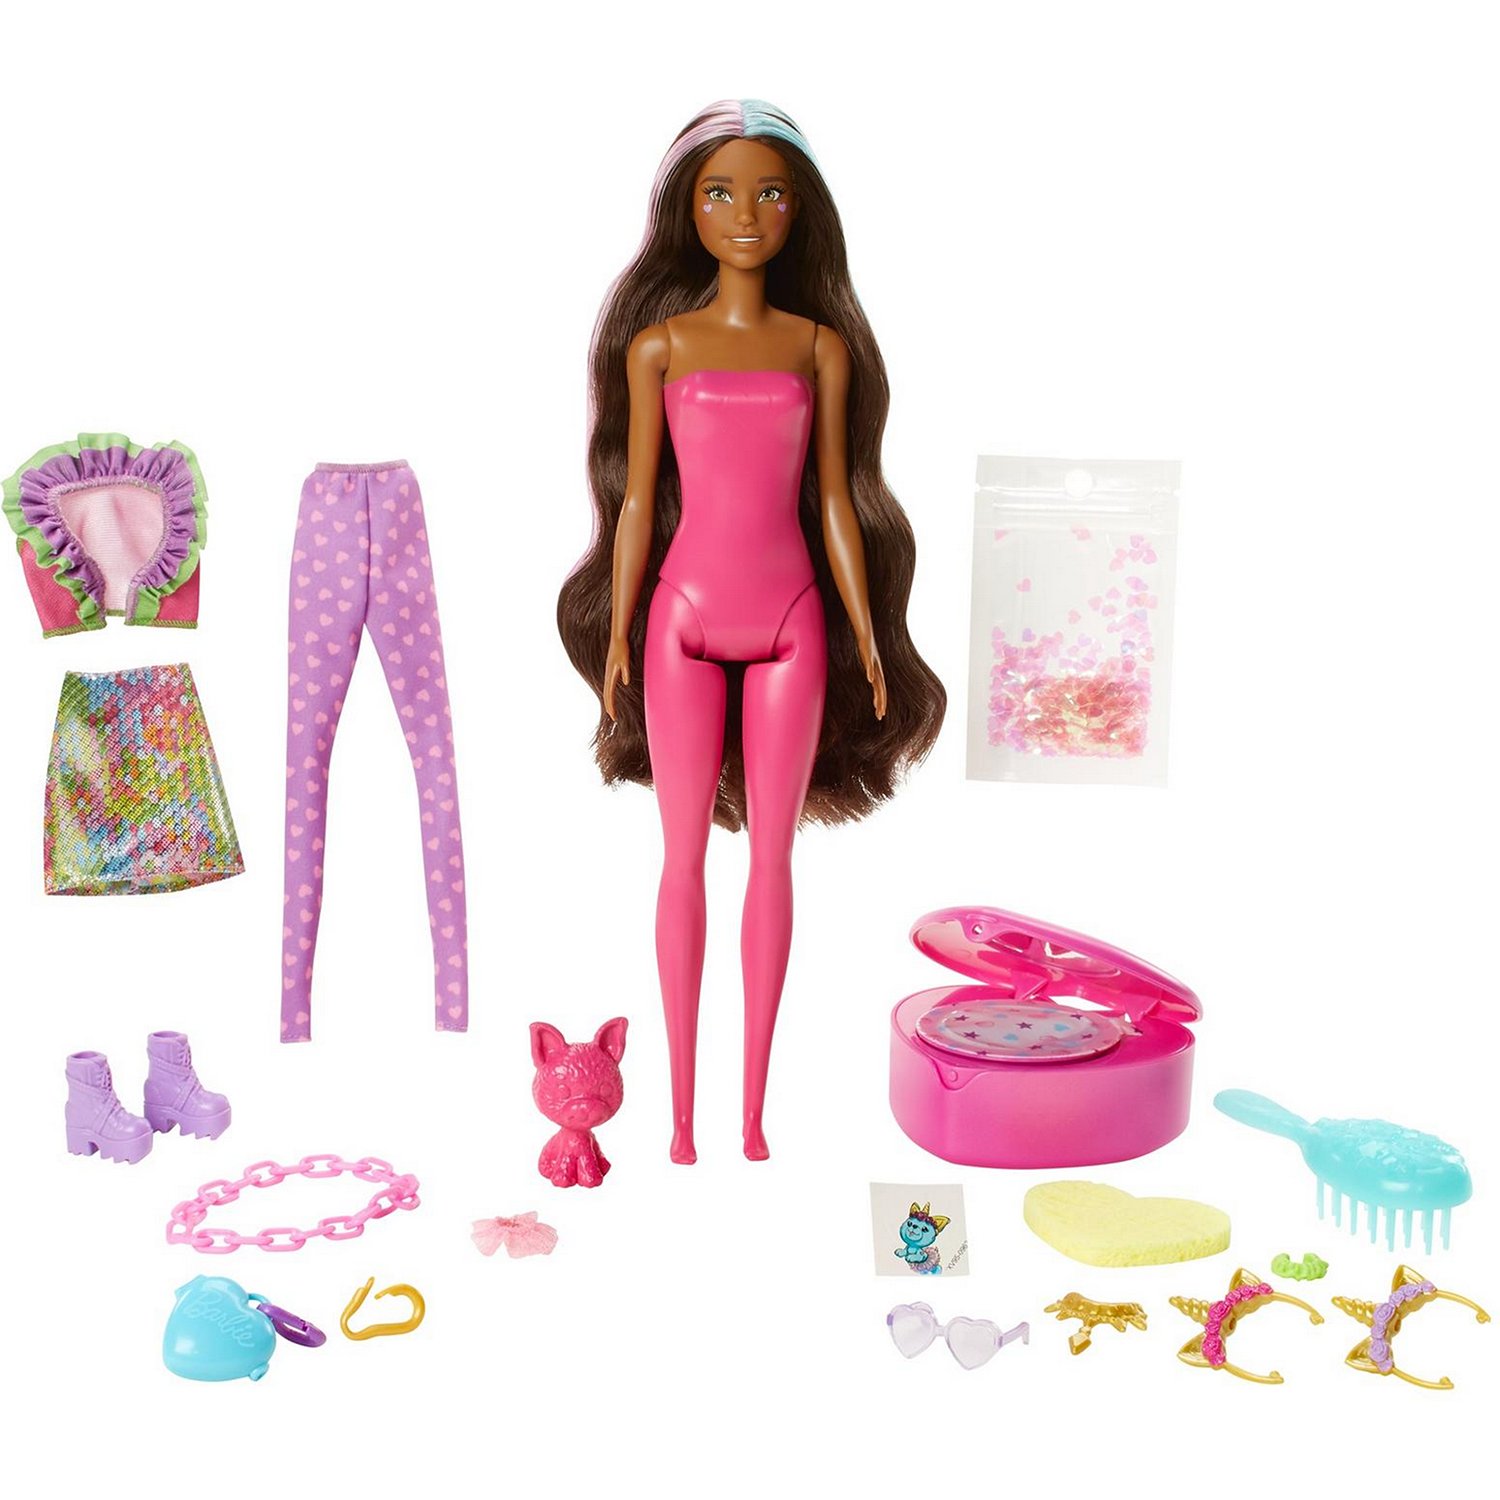 Кукла Barbie Color Reveal с сюрпризами внутри упаковки, GXV95